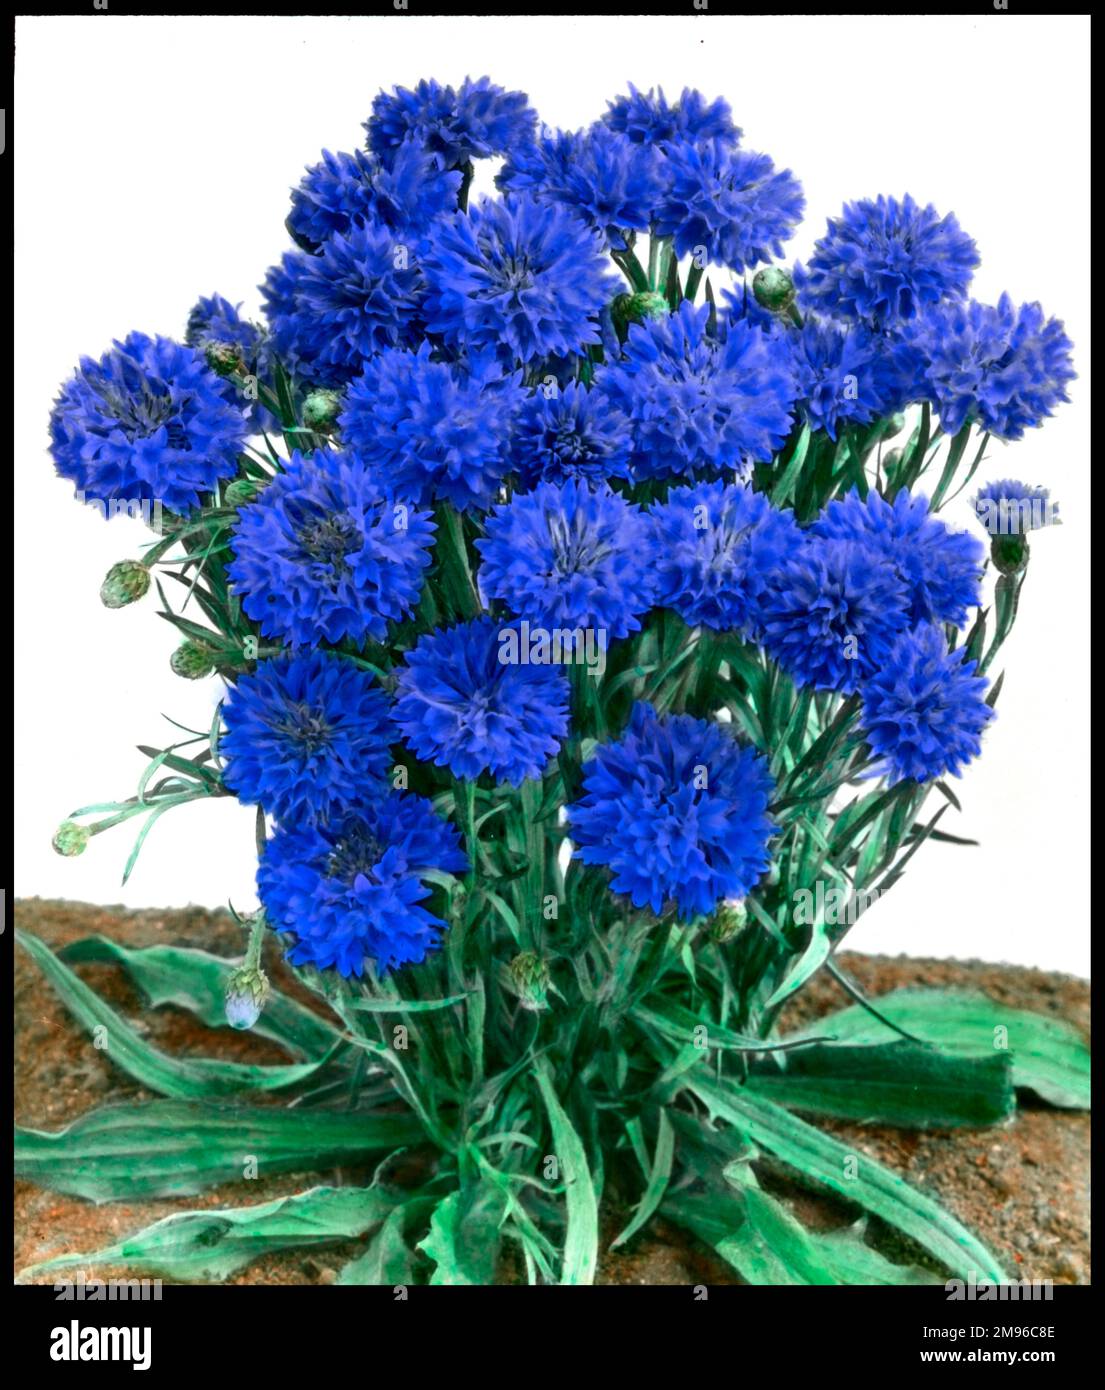 Fiore di mais (nano), 'Gem giubilare', Centaurea cyanus, pianta fiorita annuale della famiglia delle Asteracee. I fiori sono un blu abbagliante. Foto Stock